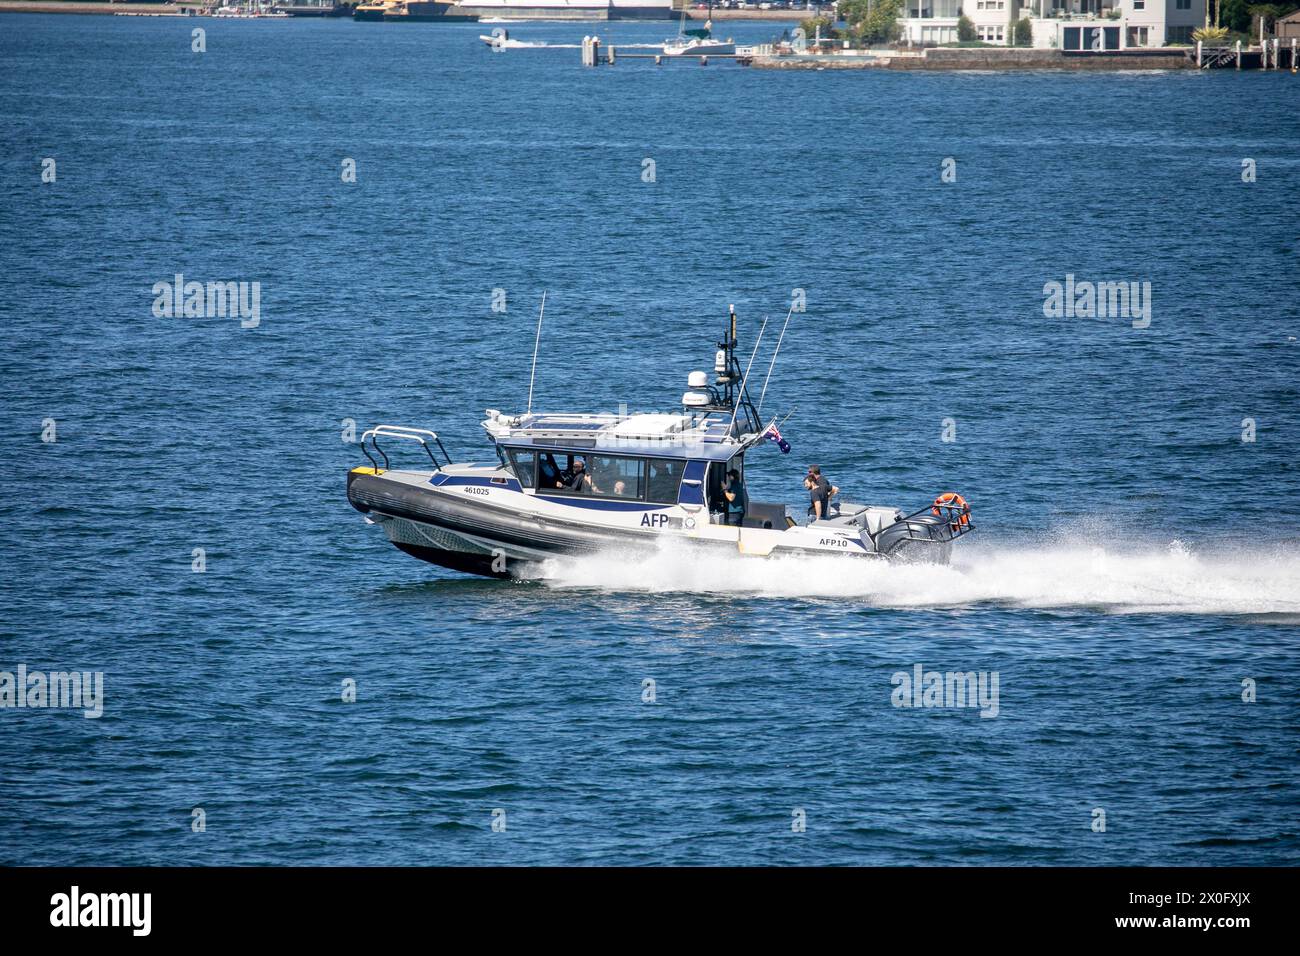 La police fédérale australienne, l''agence fédérale australienne chargée de l''application de la loi, avec son bateau RIB à grande vitesse AFP10 sur le port de Sydney, un bateau construit par Yamba Banque D'Images